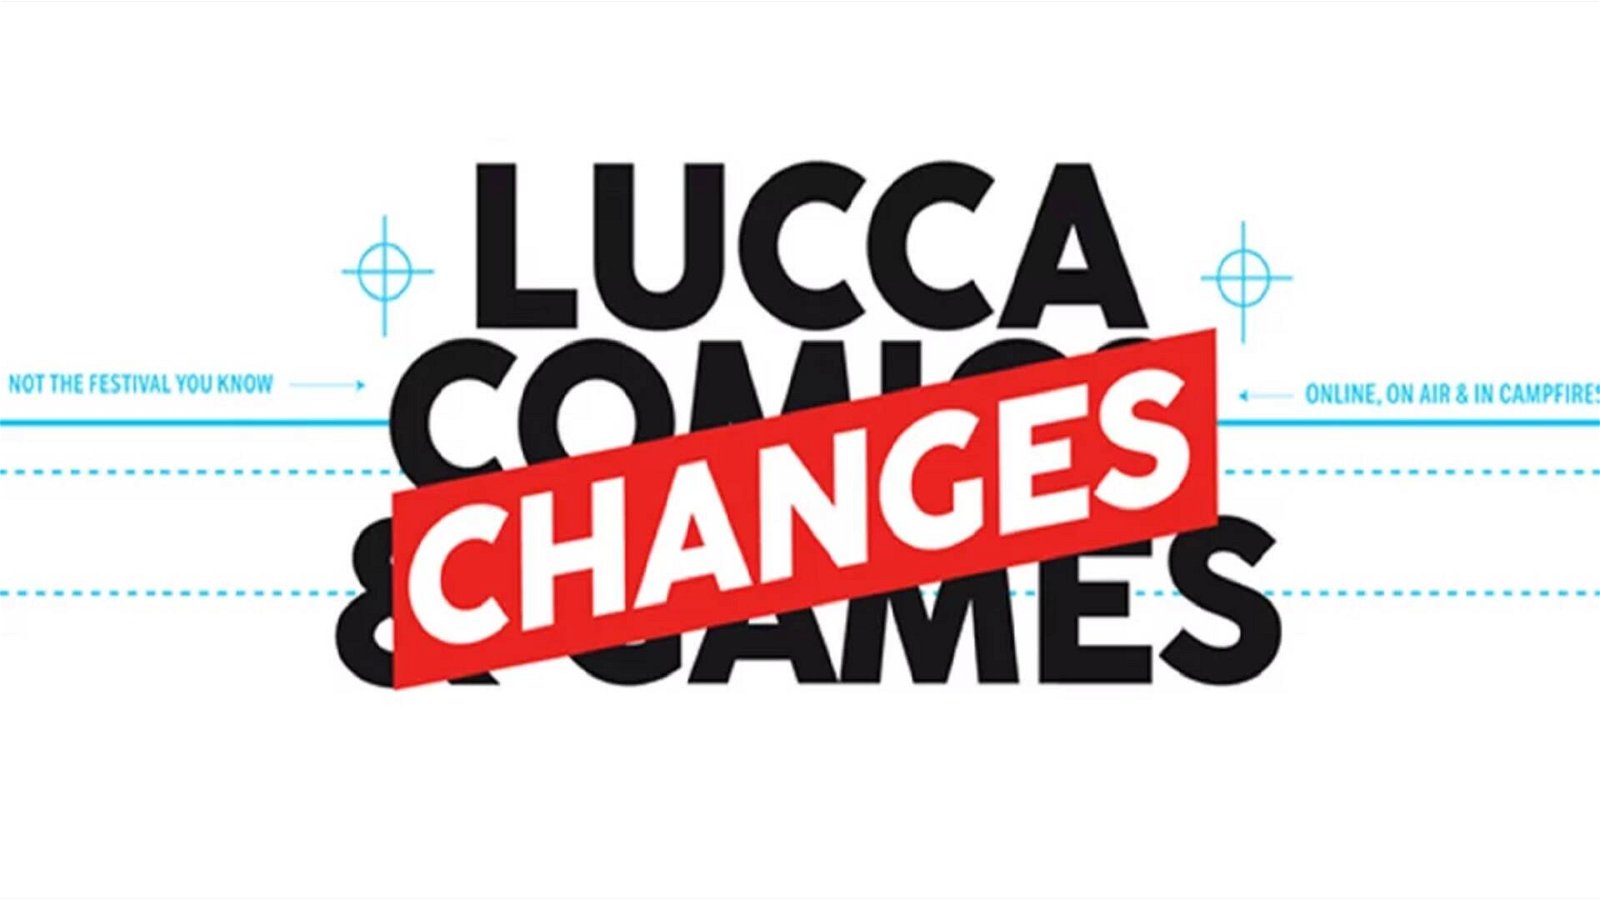 Immagine di Lucca ChanGes 2020 - tutti i dettagli dalla conferenza stampa